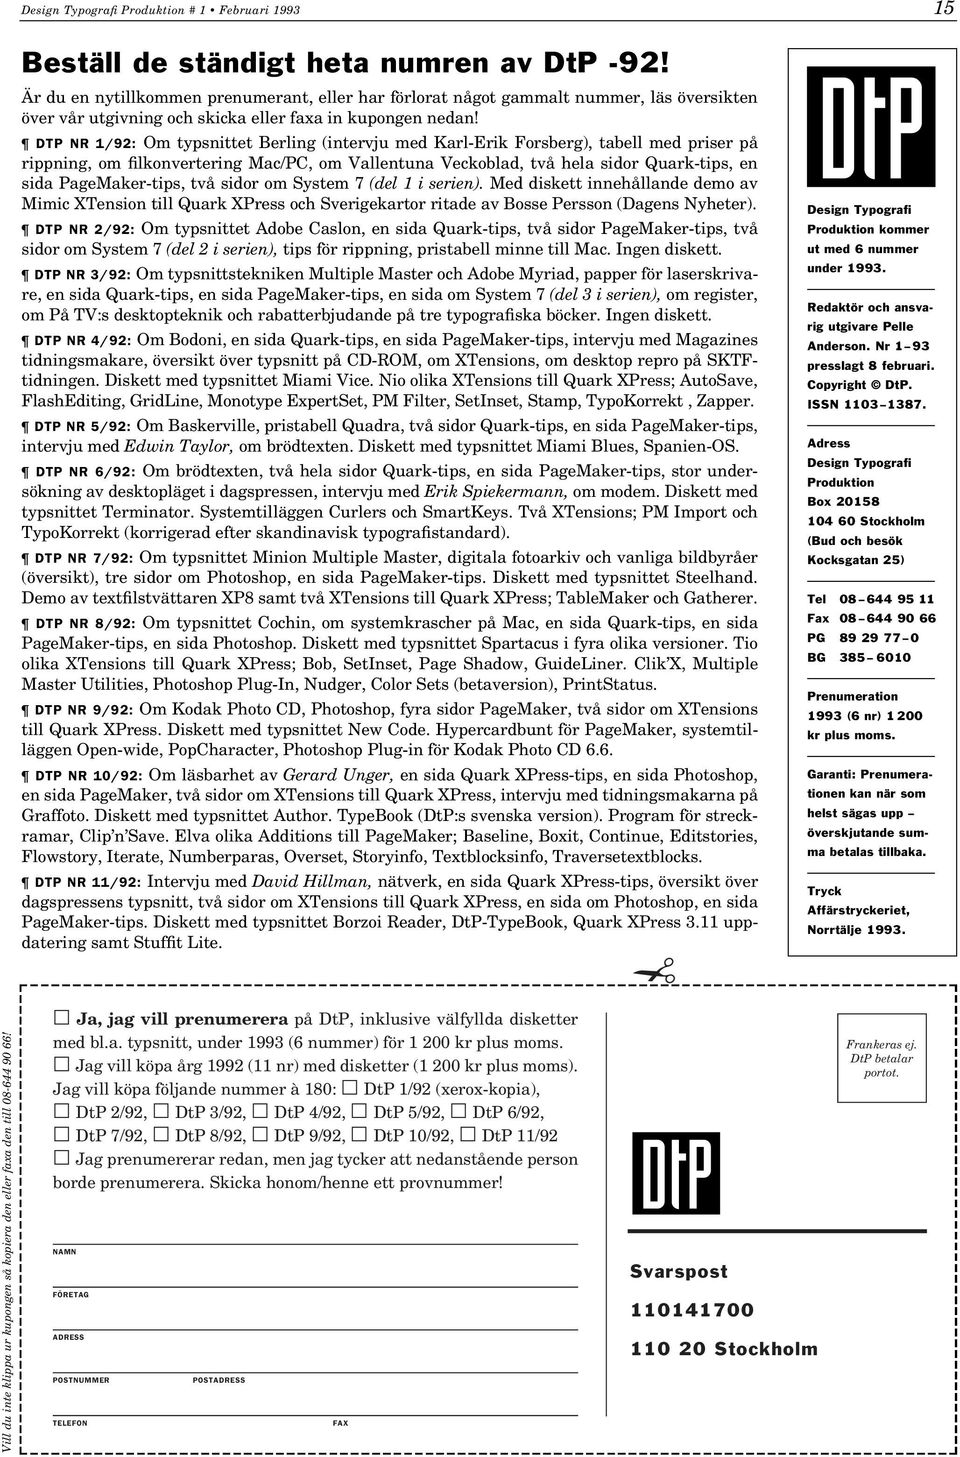 DTP NR 1/92: Om typsnittet Berling (intervju med Karl-Erik Forsberg), tabell med priser på rippning, om filkonvertering Mac/PC, om Vallentuna Veckoblad, två hela sidor Quark-tips, en sida